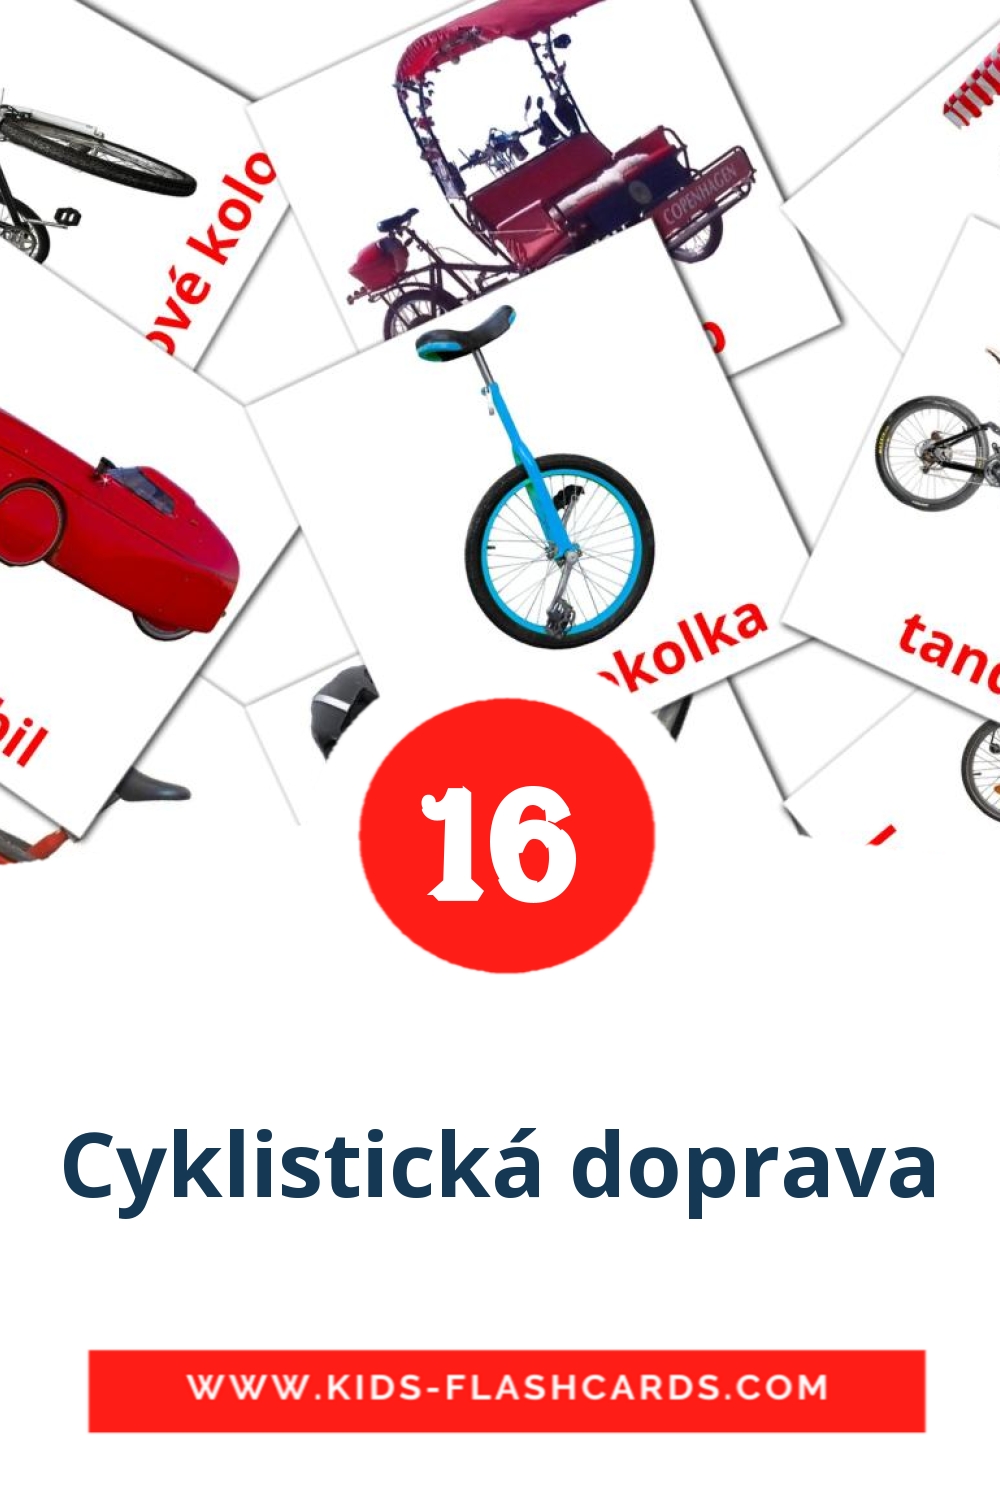 16 tarjetas didacticas de Cyklistická doprava para el jardín de infancia en checo